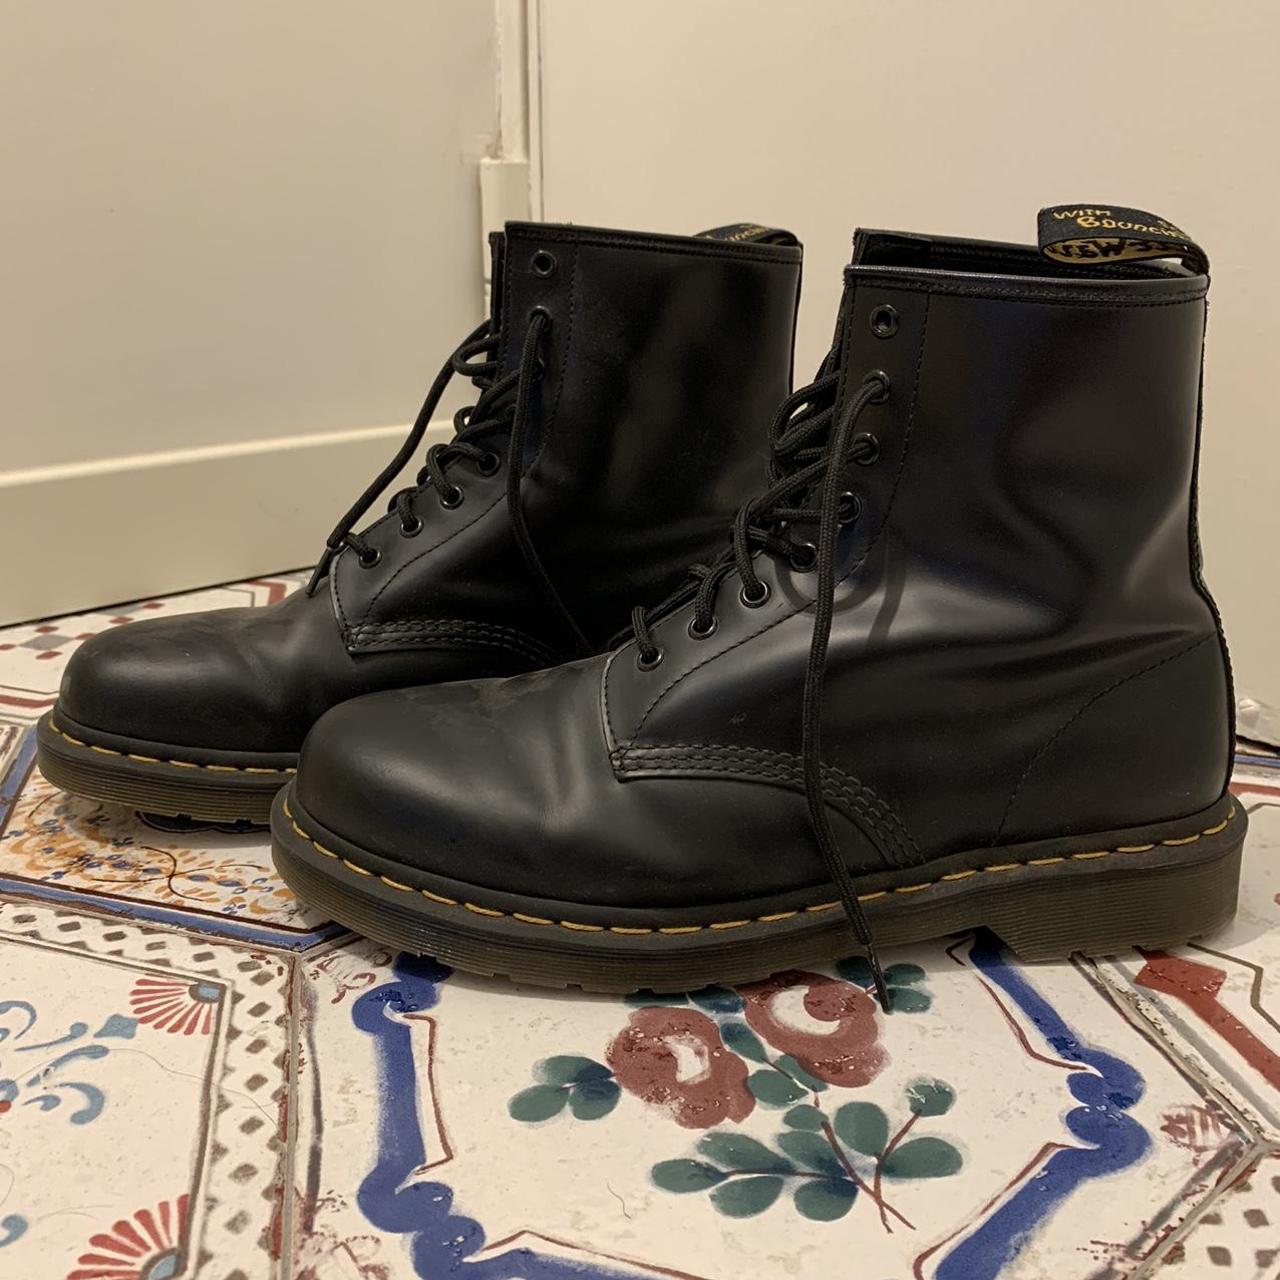 Dr Martens Men’s Original Boots Black Slightly used,... - Depop